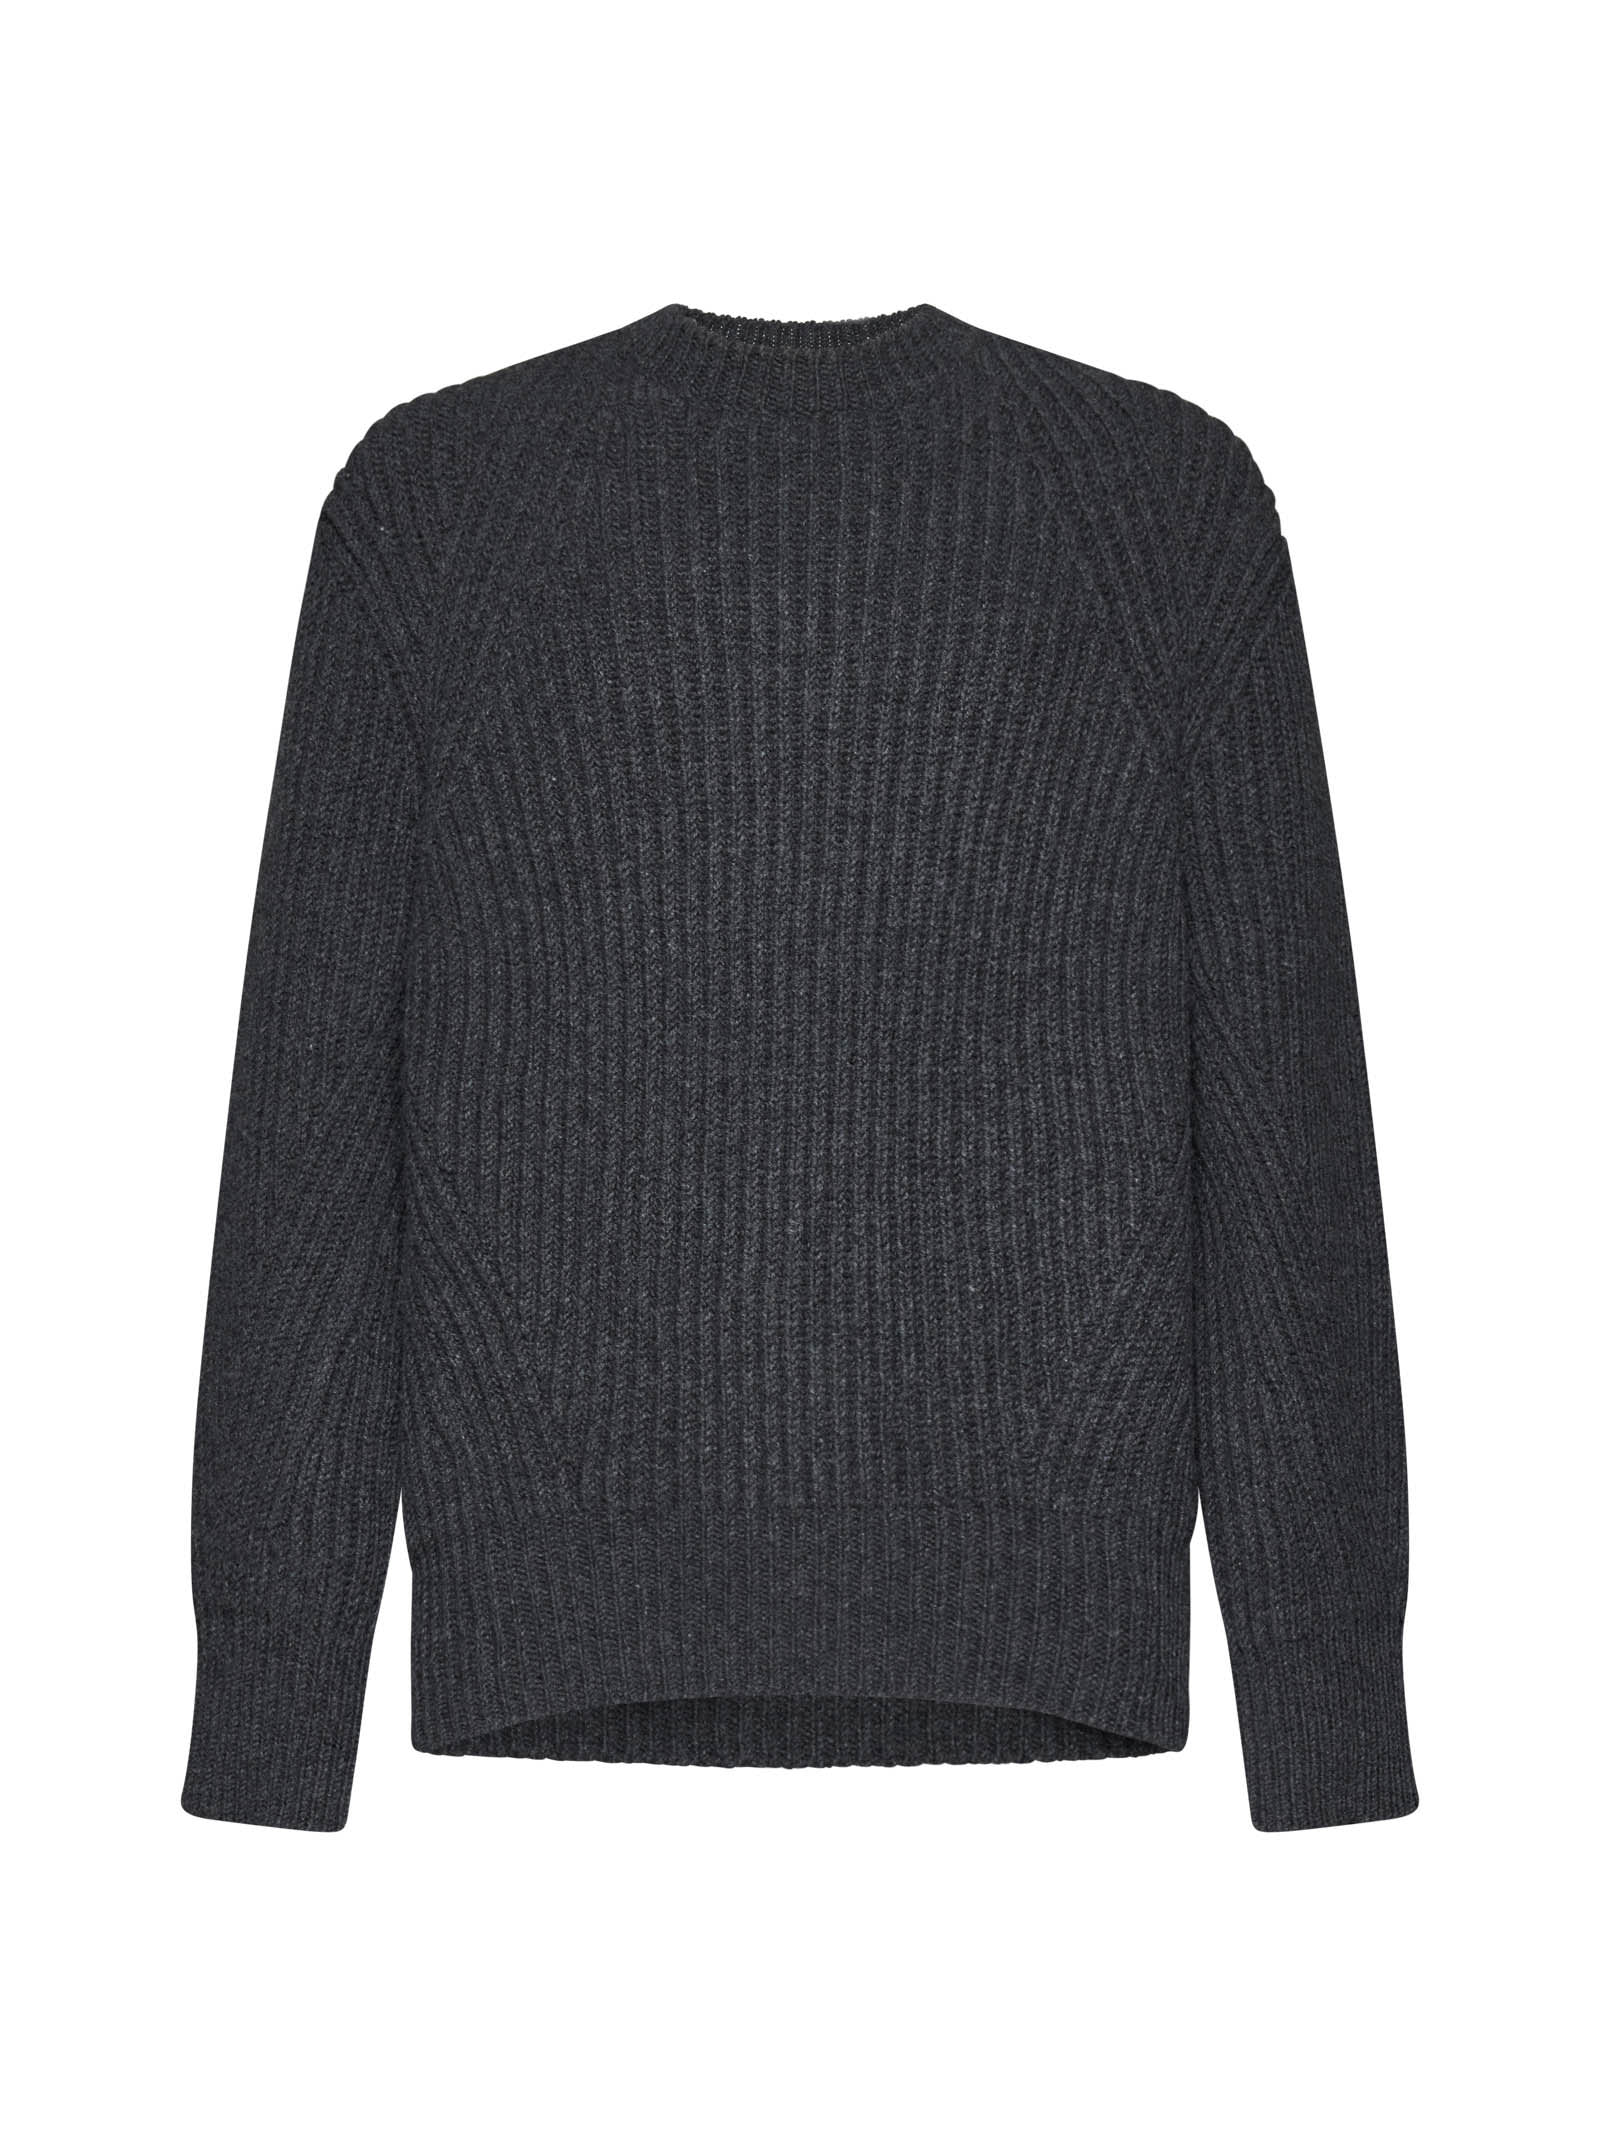 Crewneck Rib Knit Sweater